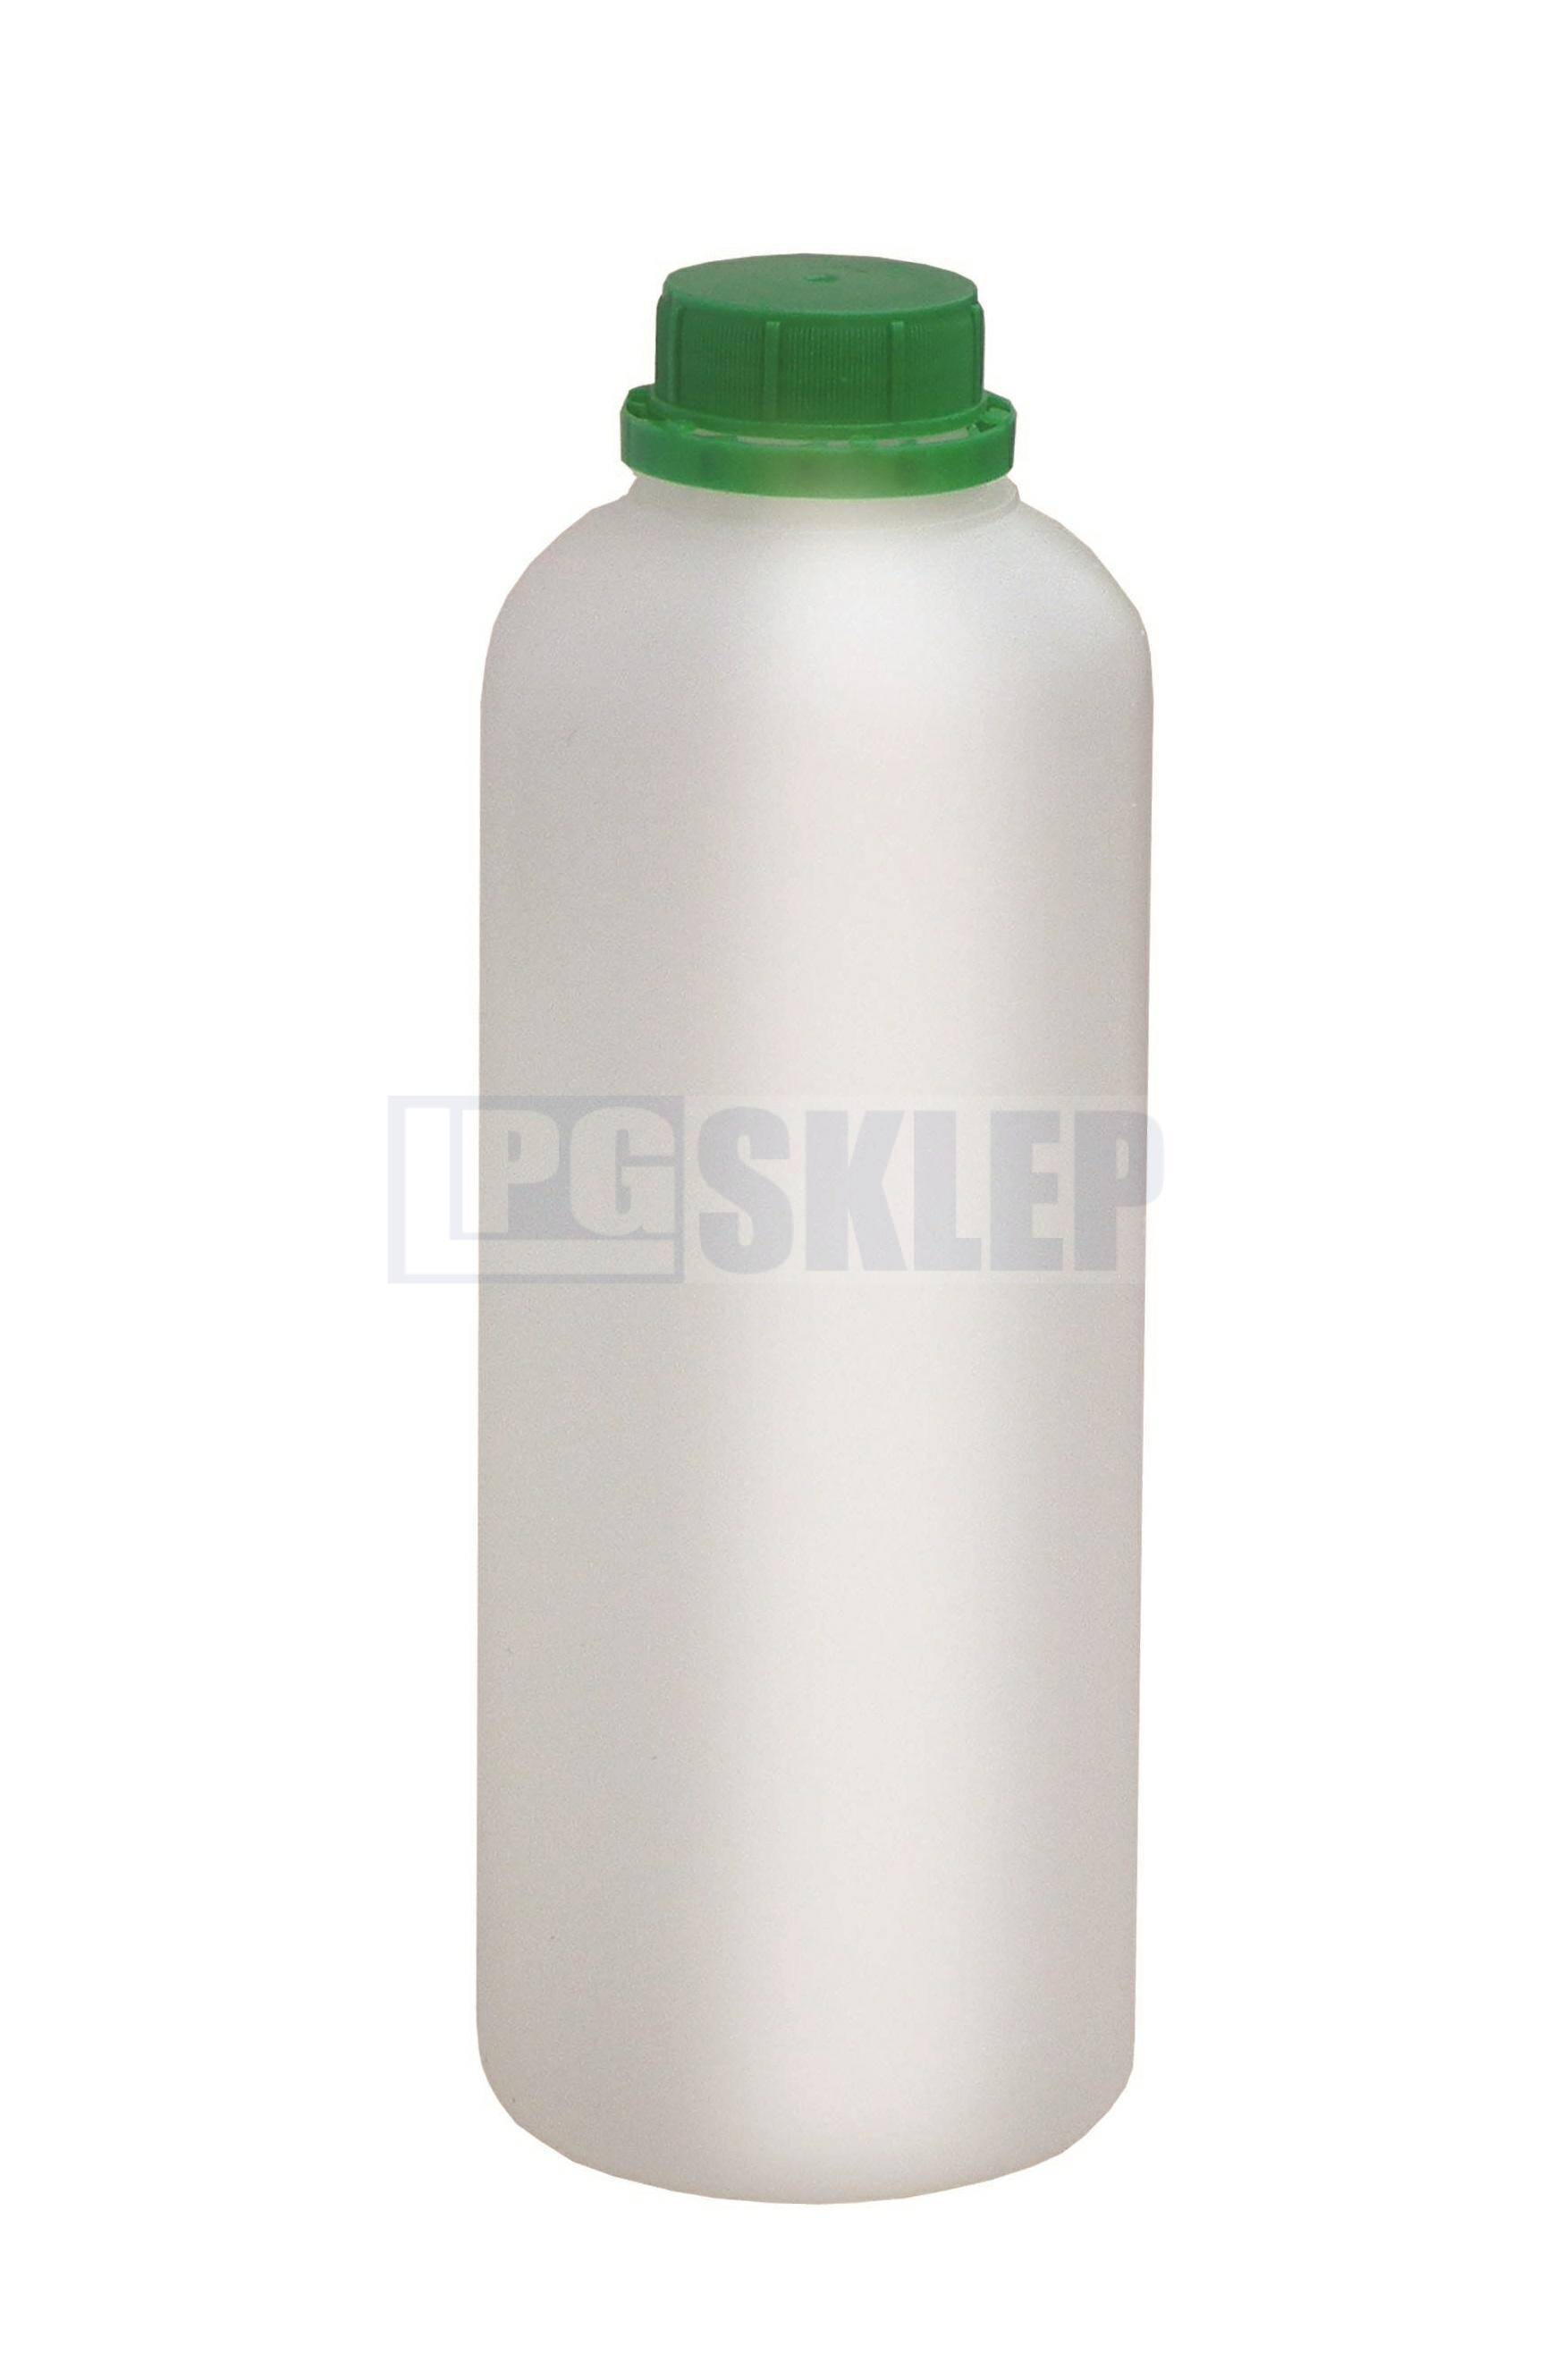 BOLL butelka PEHD z podziałką 1000ml (Photo 1)